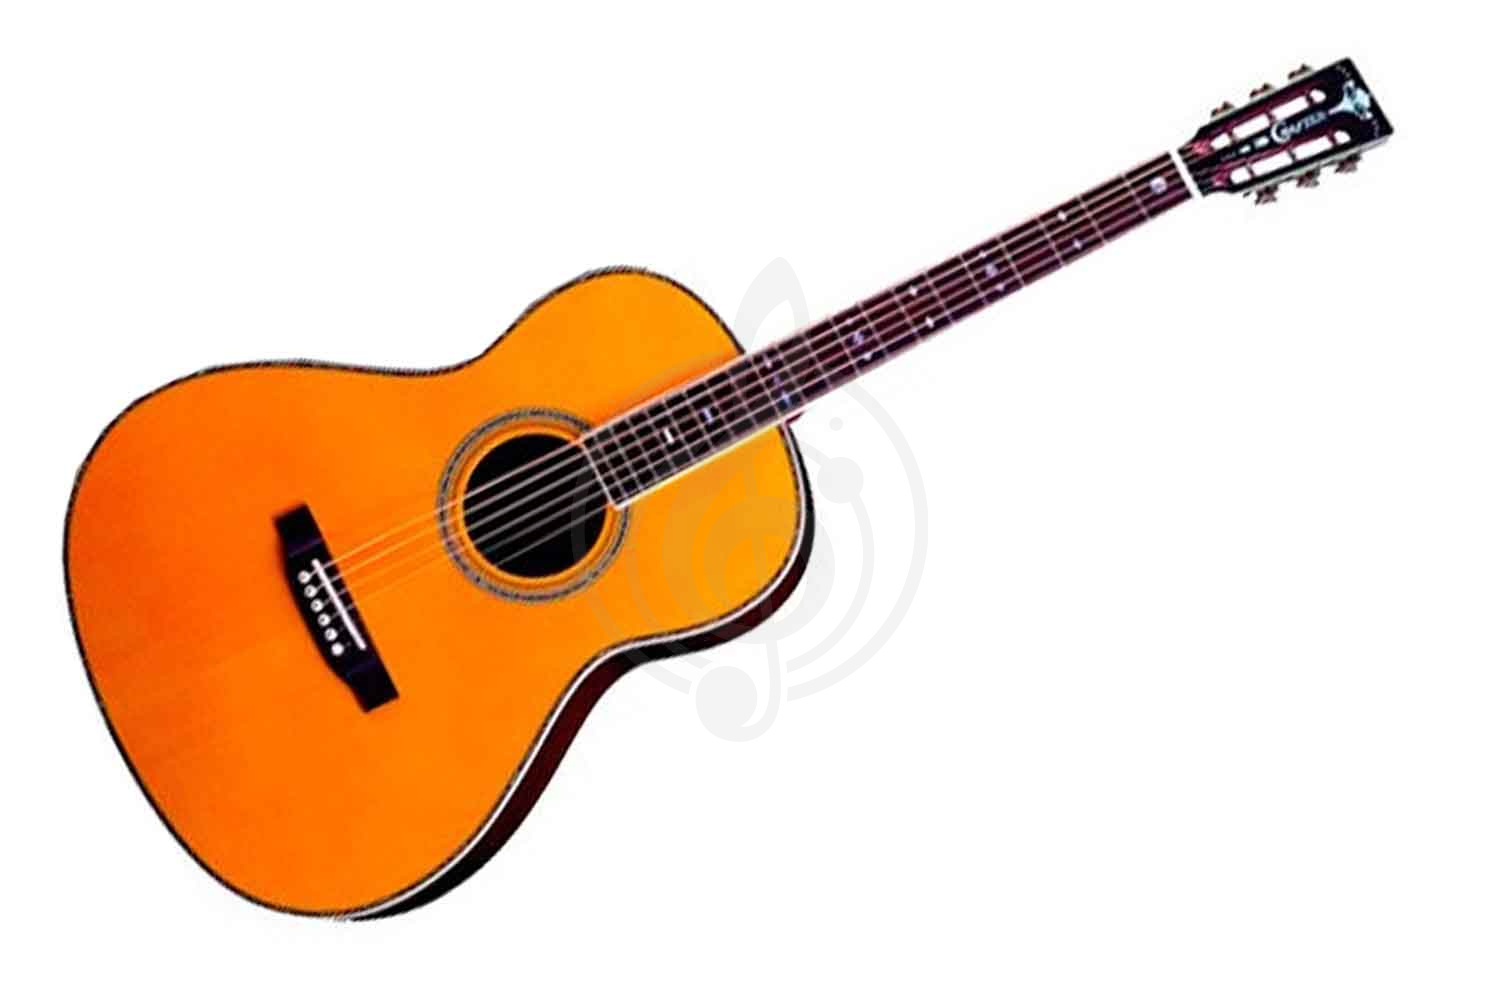 Акустическая гитара Акустические гитары Crafter CRAFTER TA-080 AM + Чехол - Акустическая гитара шестиструнная Крафтер TA-080/AM+Чехол - фото 1